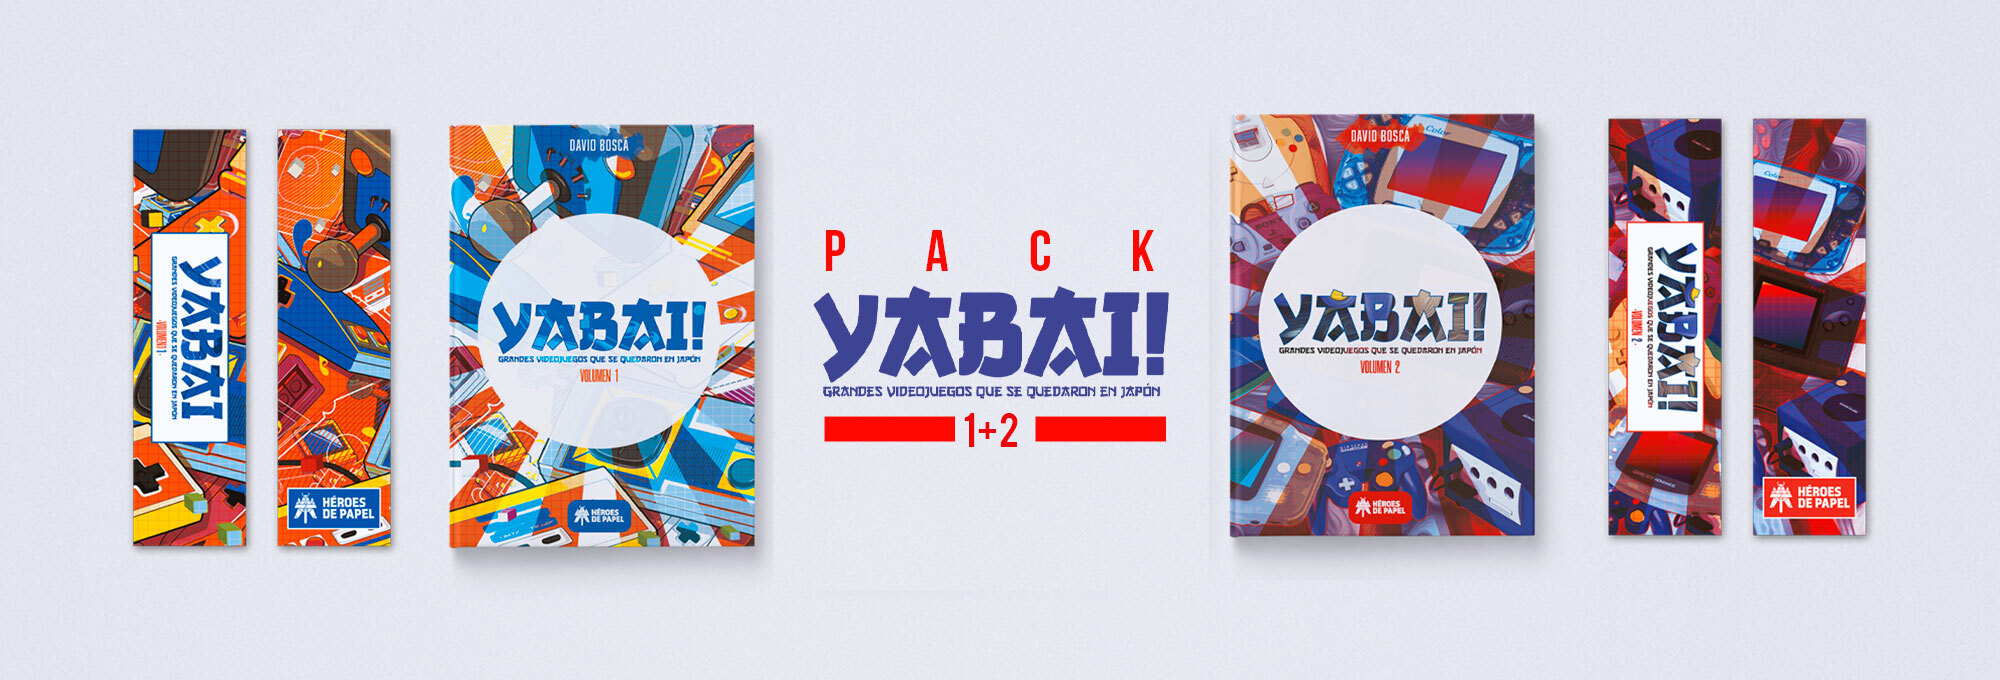 Yabai! Vol. 1 + Yabai! Vol. 2 Grandes videojuegos que se quedaron en Japón